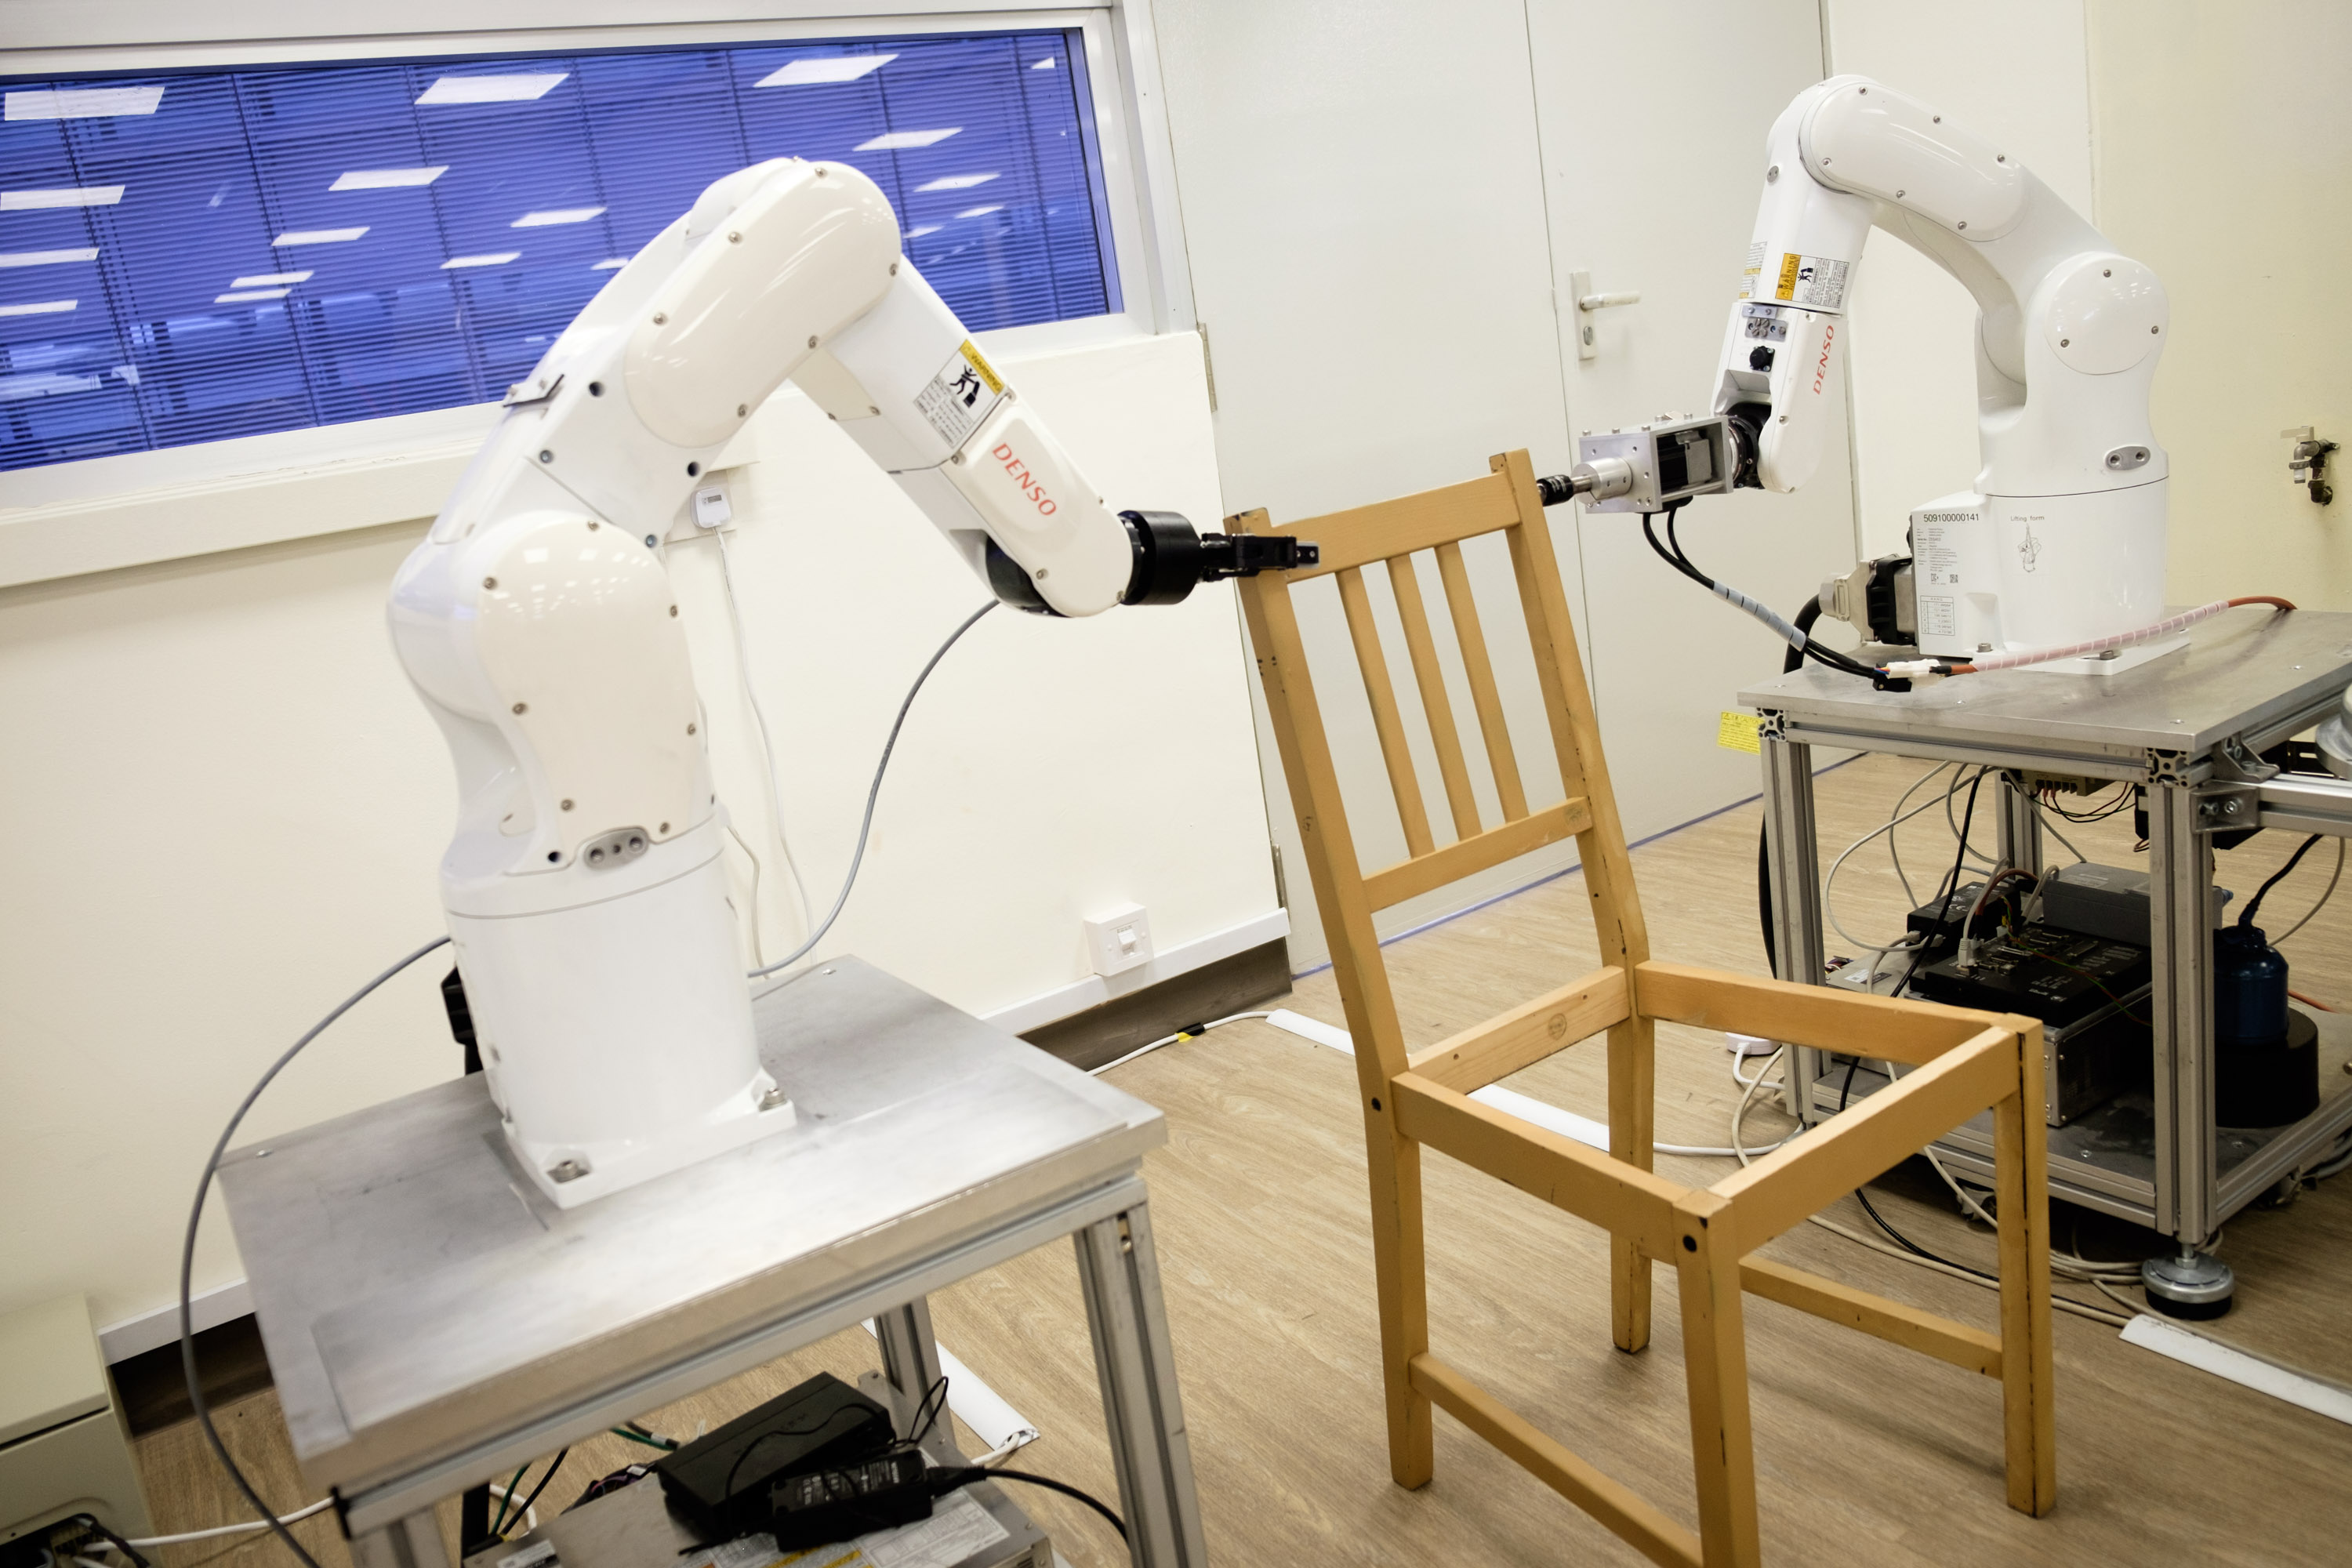 Videó: így birkóznak meg a robotok egy Ikea-bútor összeszerelésével